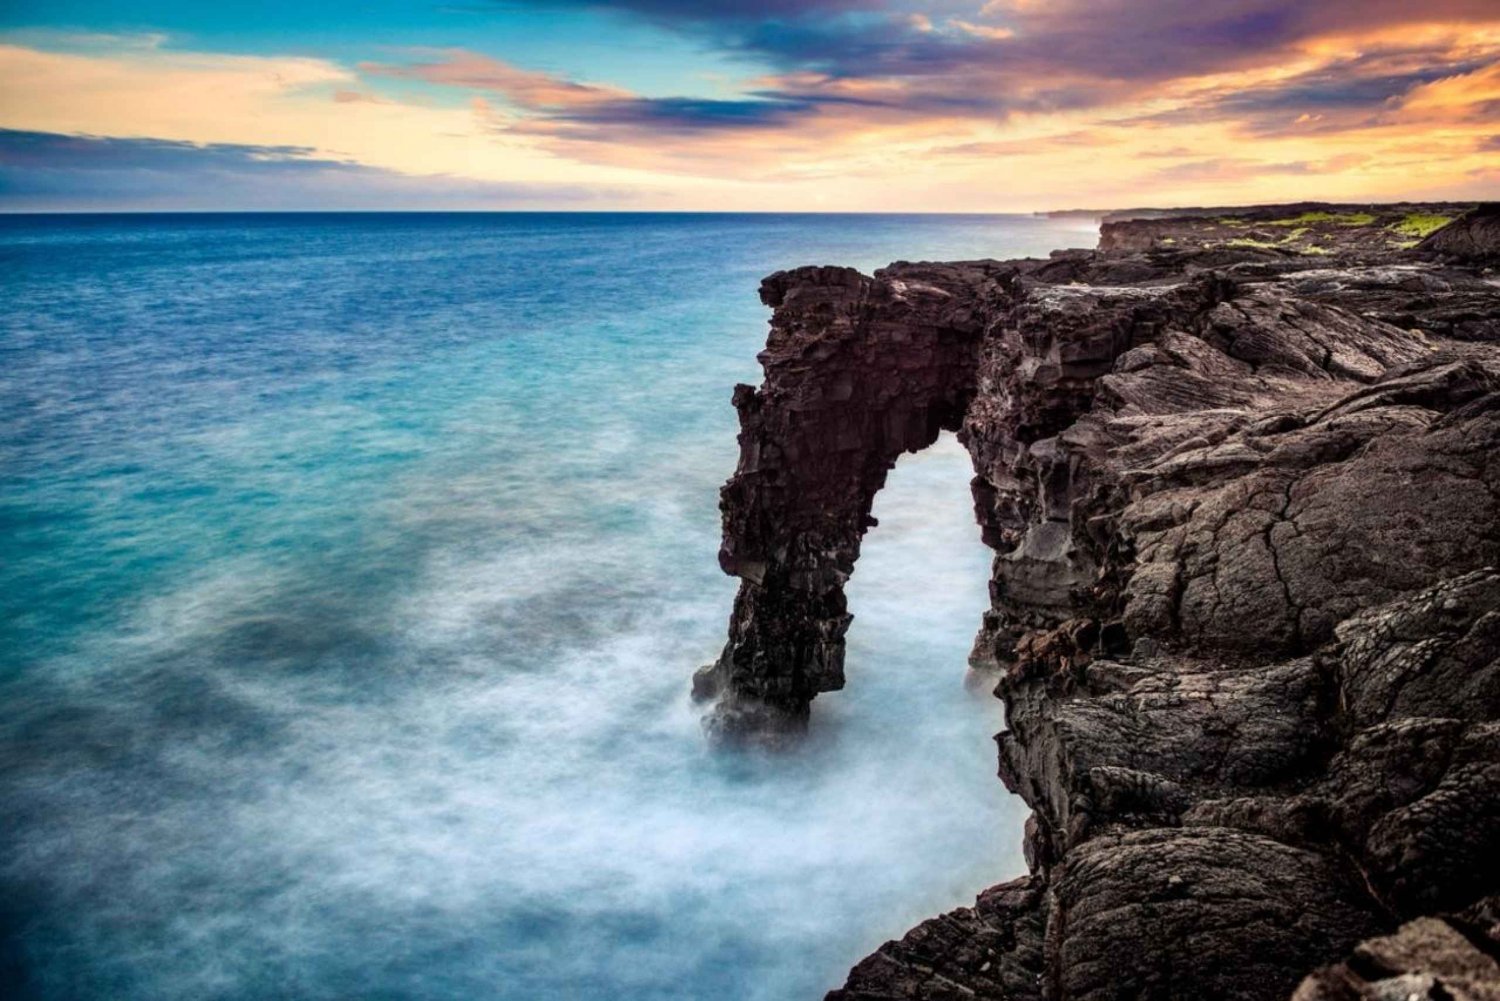 Hawaii Island Spectacle: Et majestetisk øyeventyr i sirkel